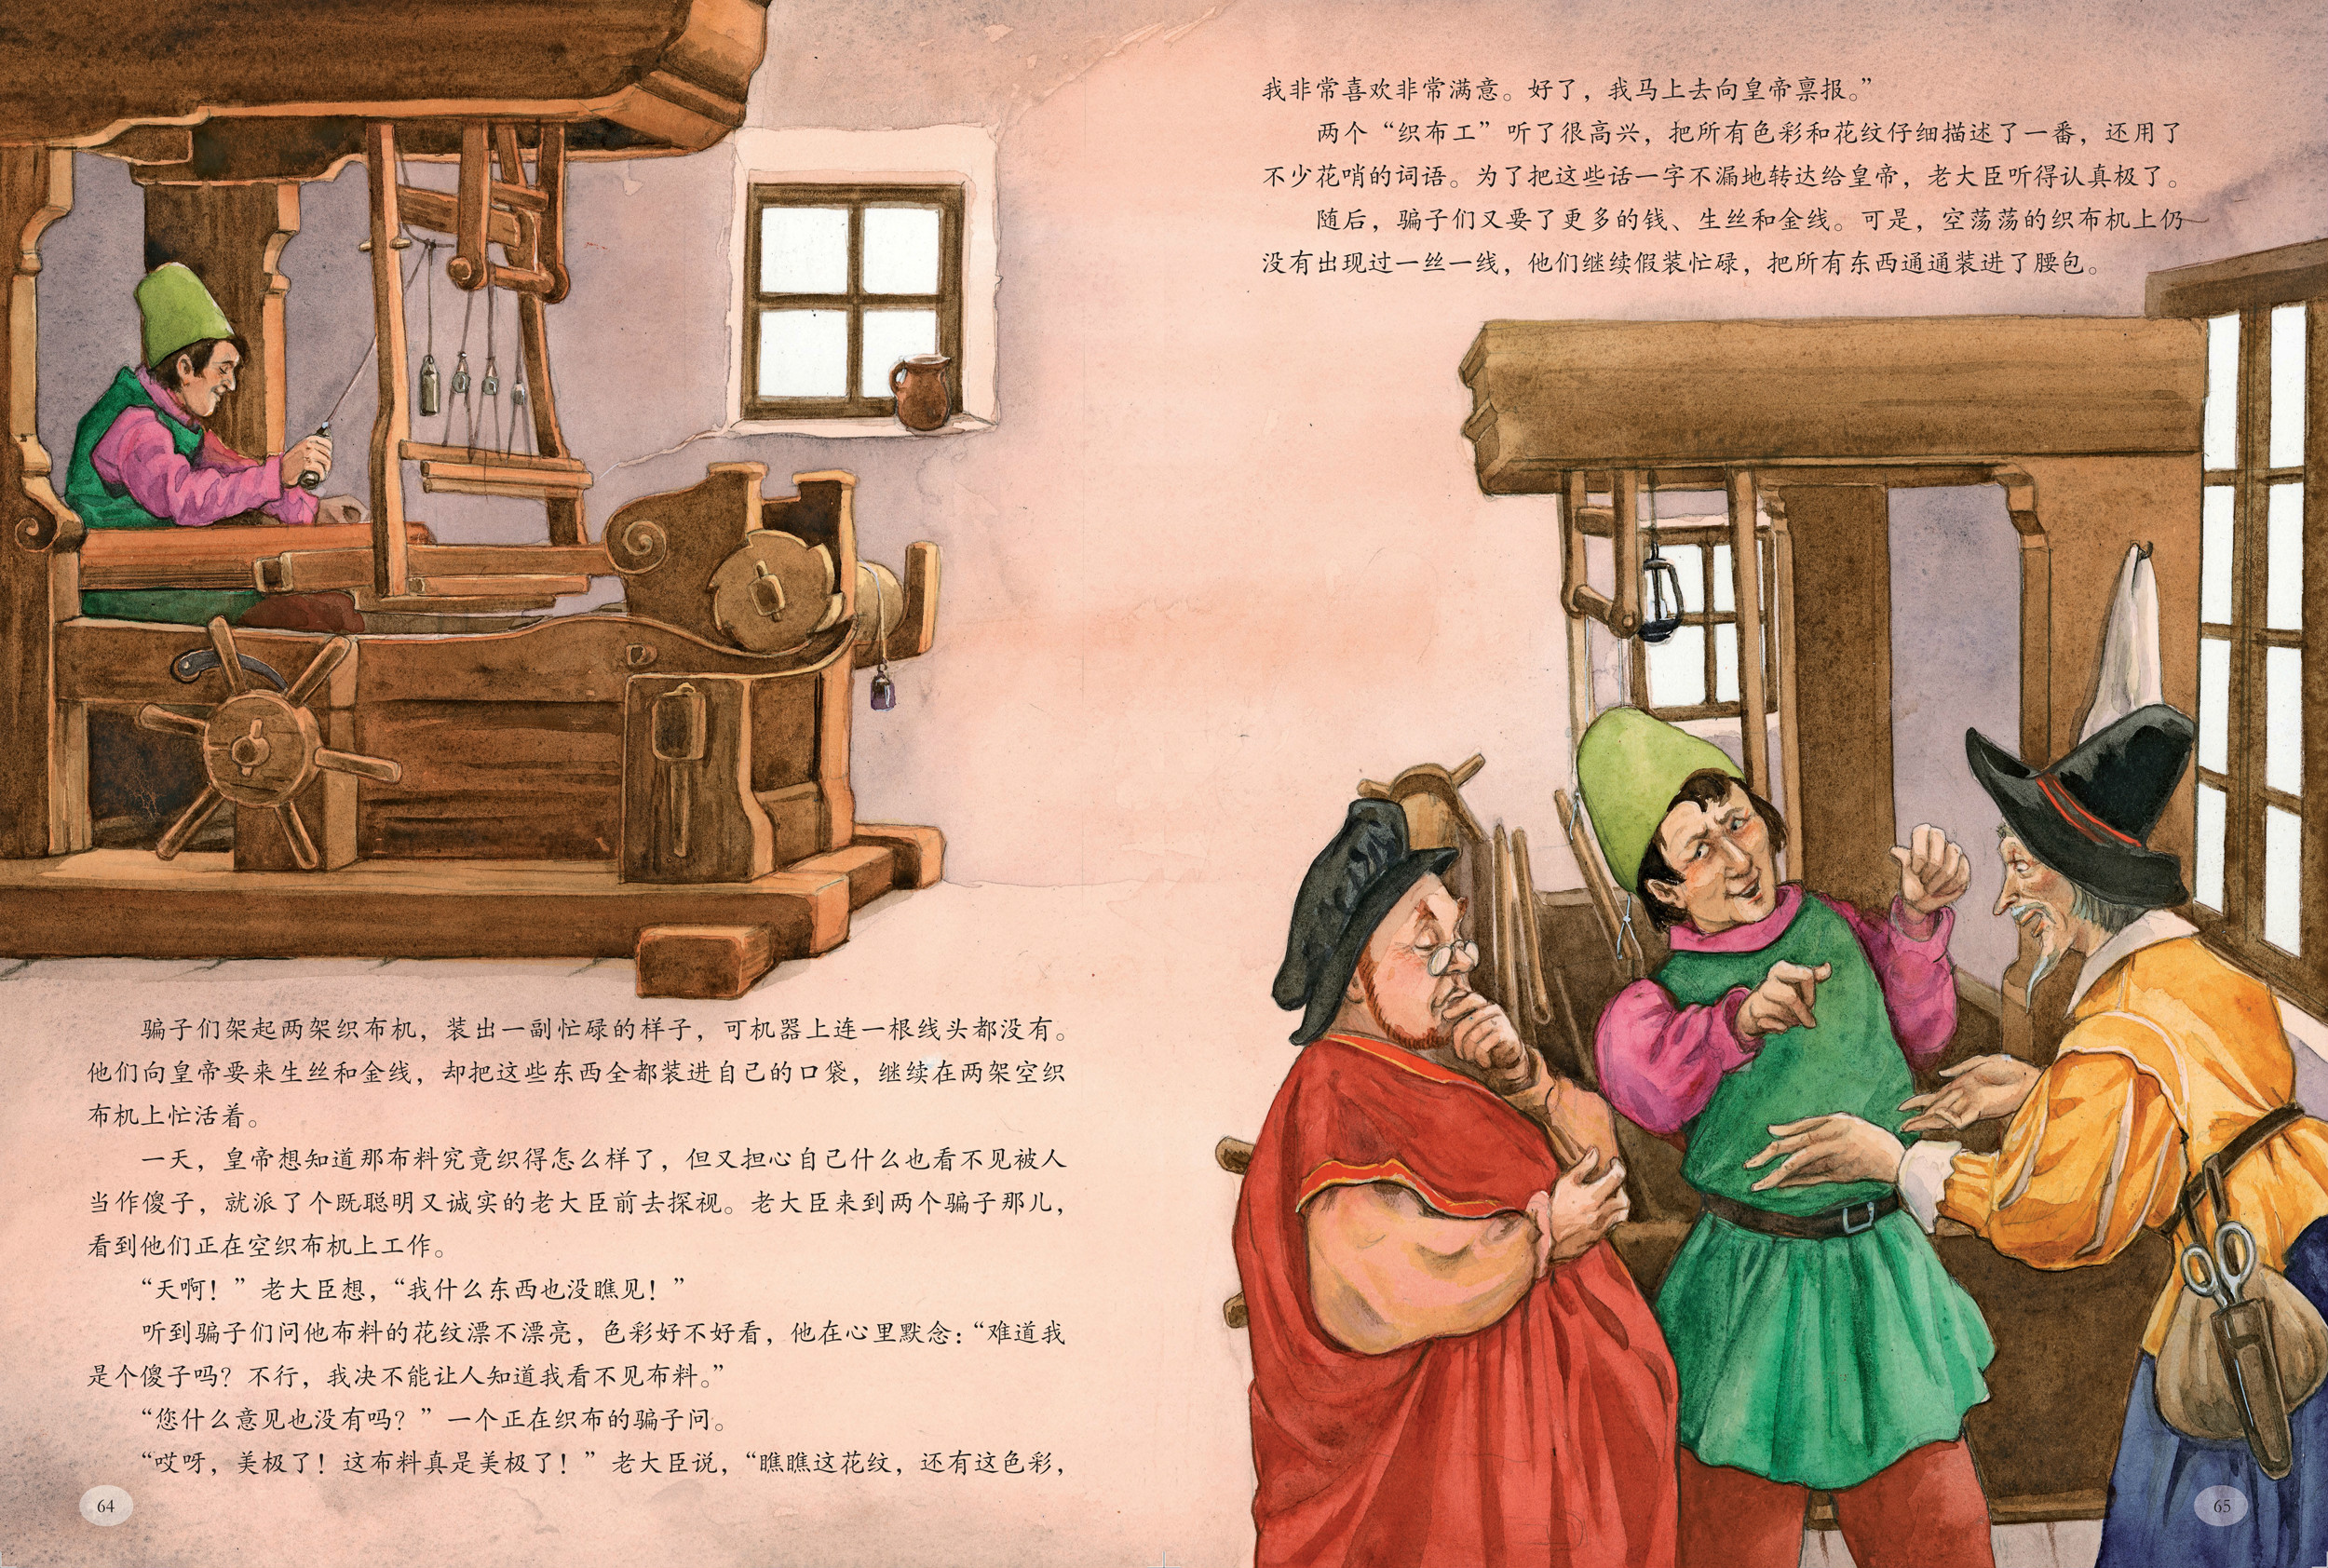 《大画世界经典系列三》之安徒生童话绘本精彩连载